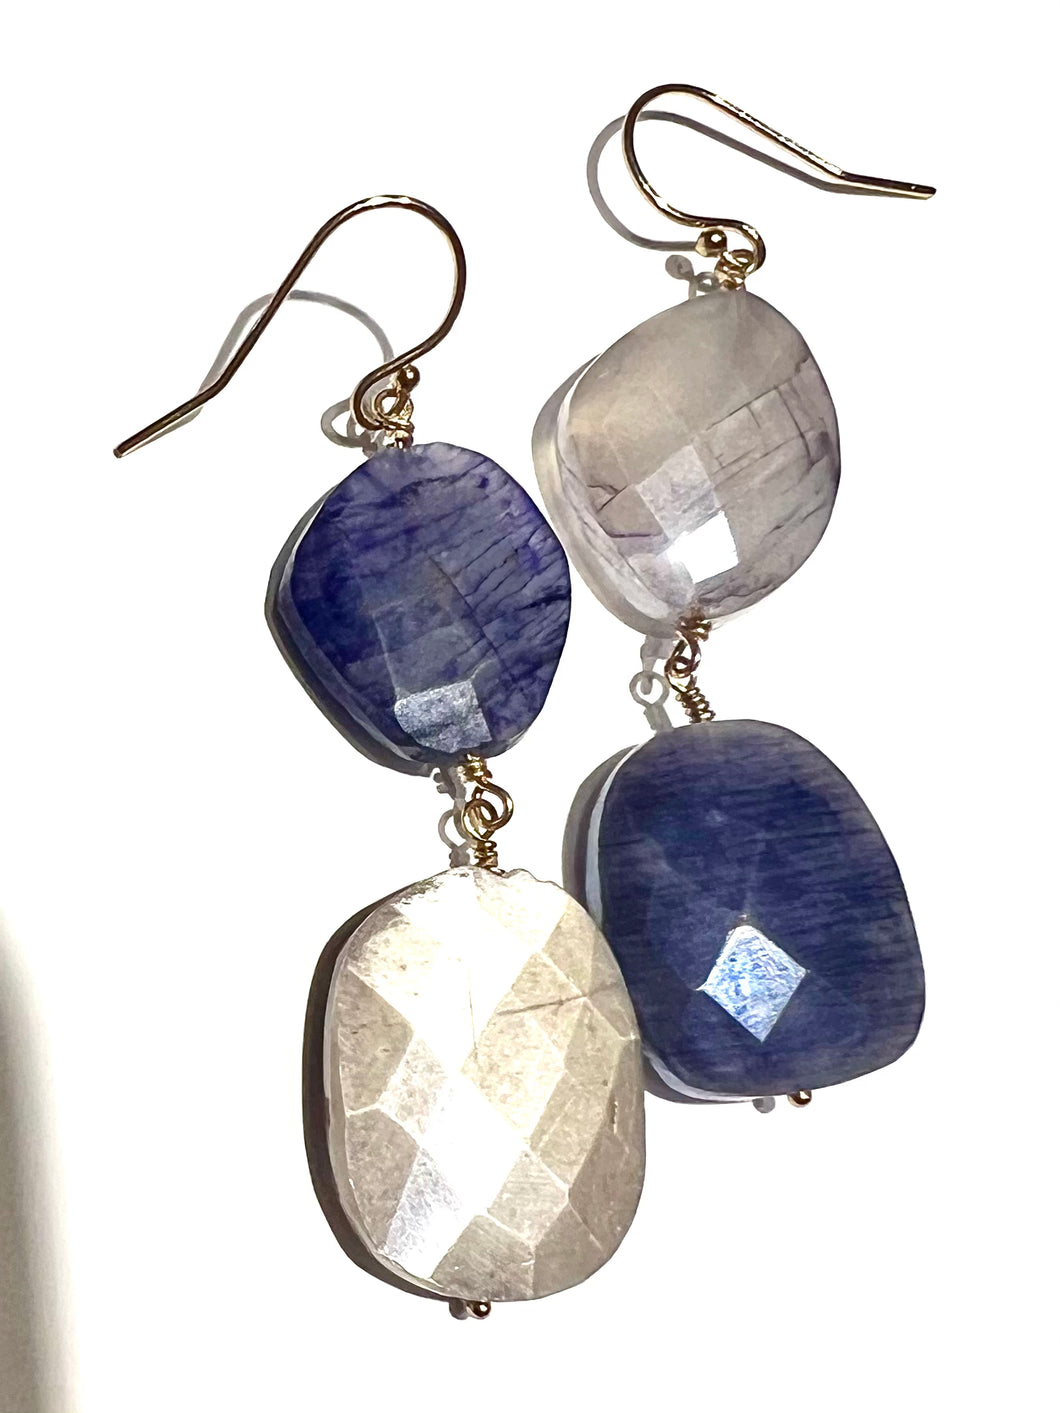 Duo of Moonstone earrings